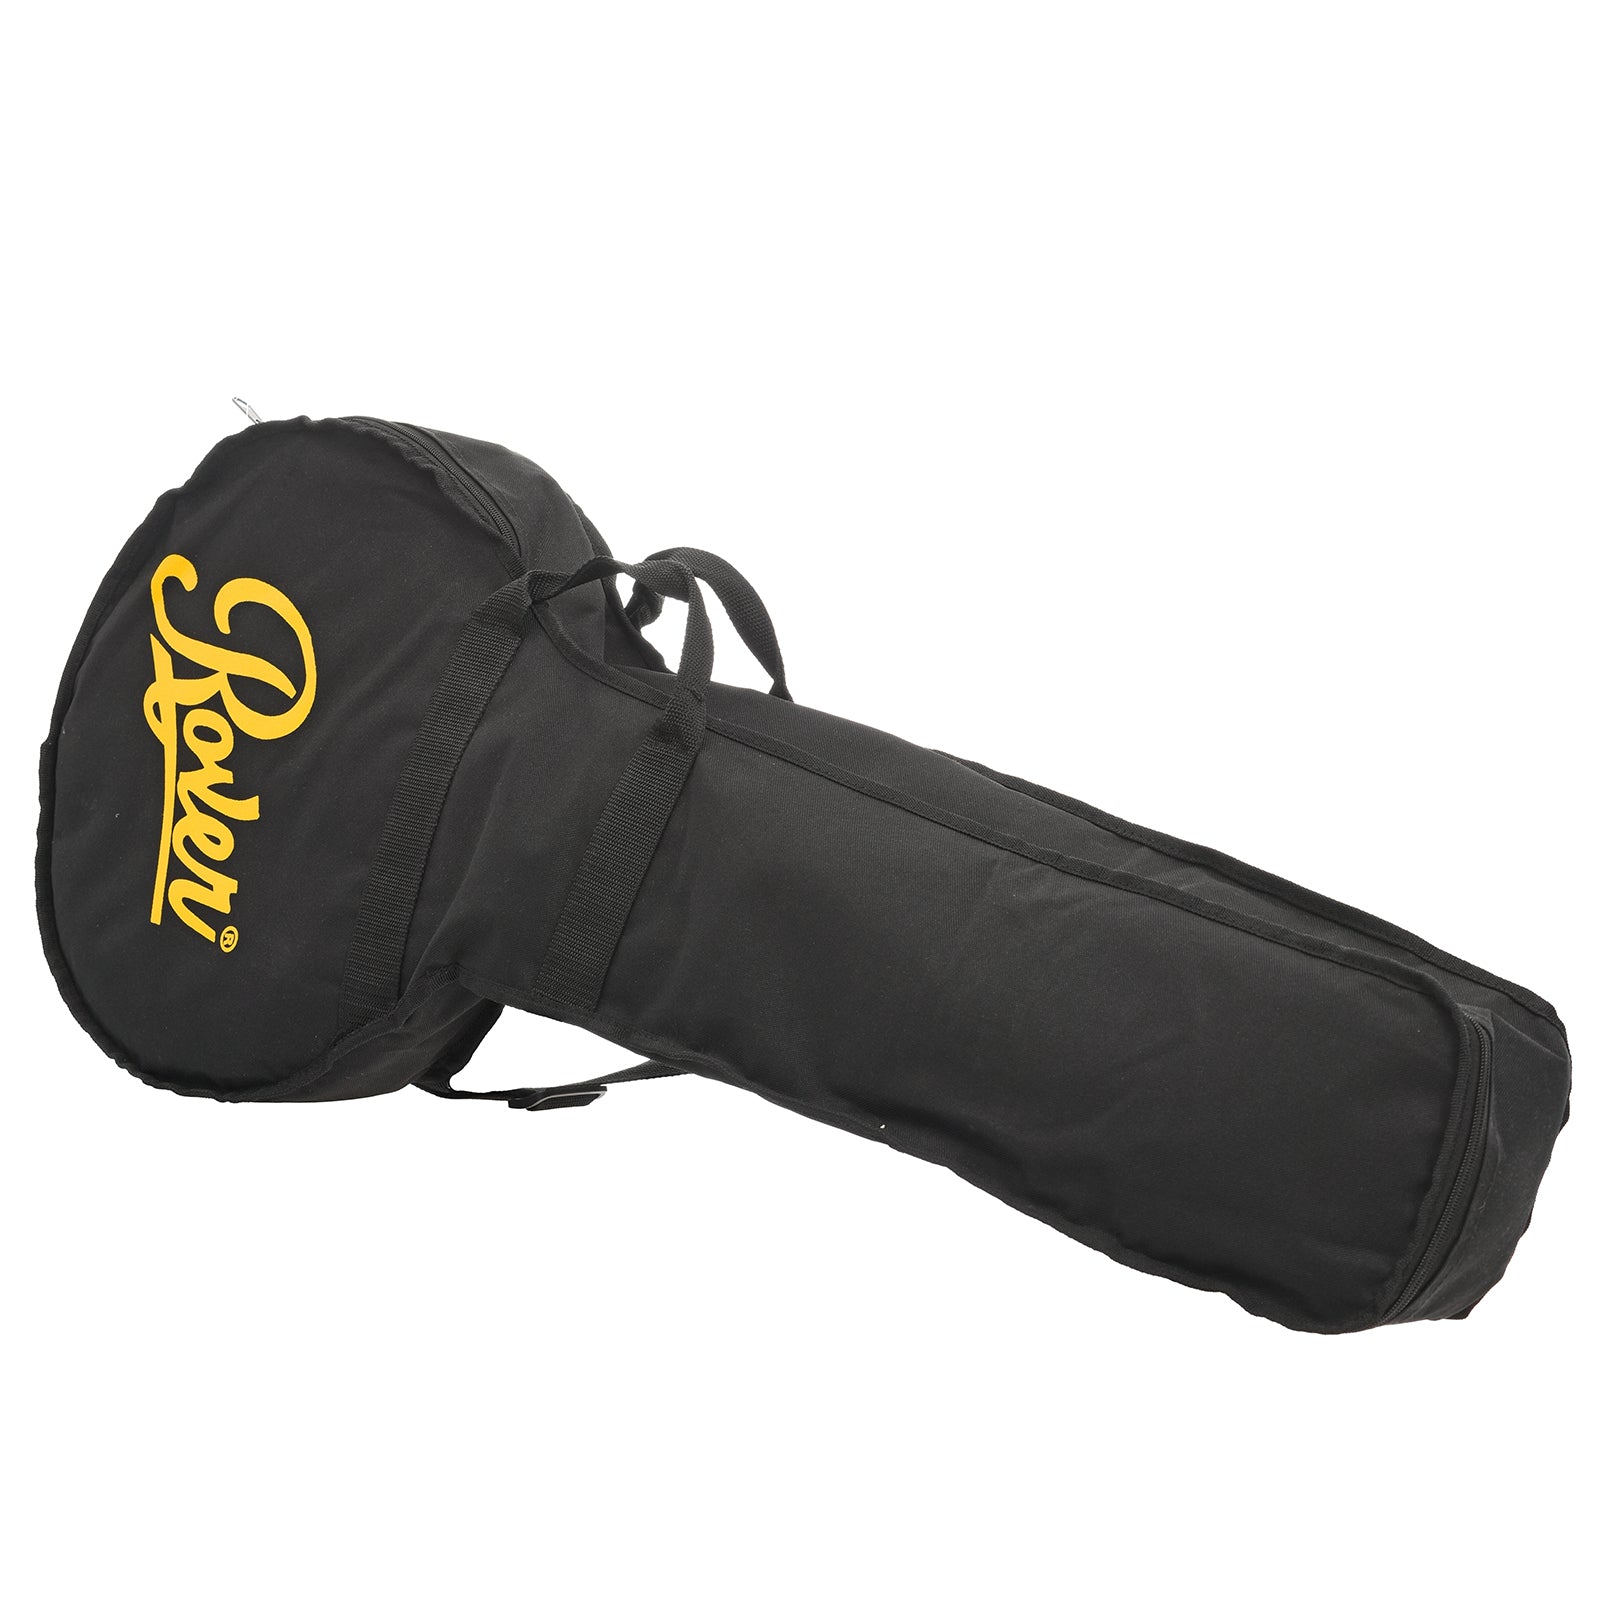 Gig bag for Rover RB-20 Open Back Banjo